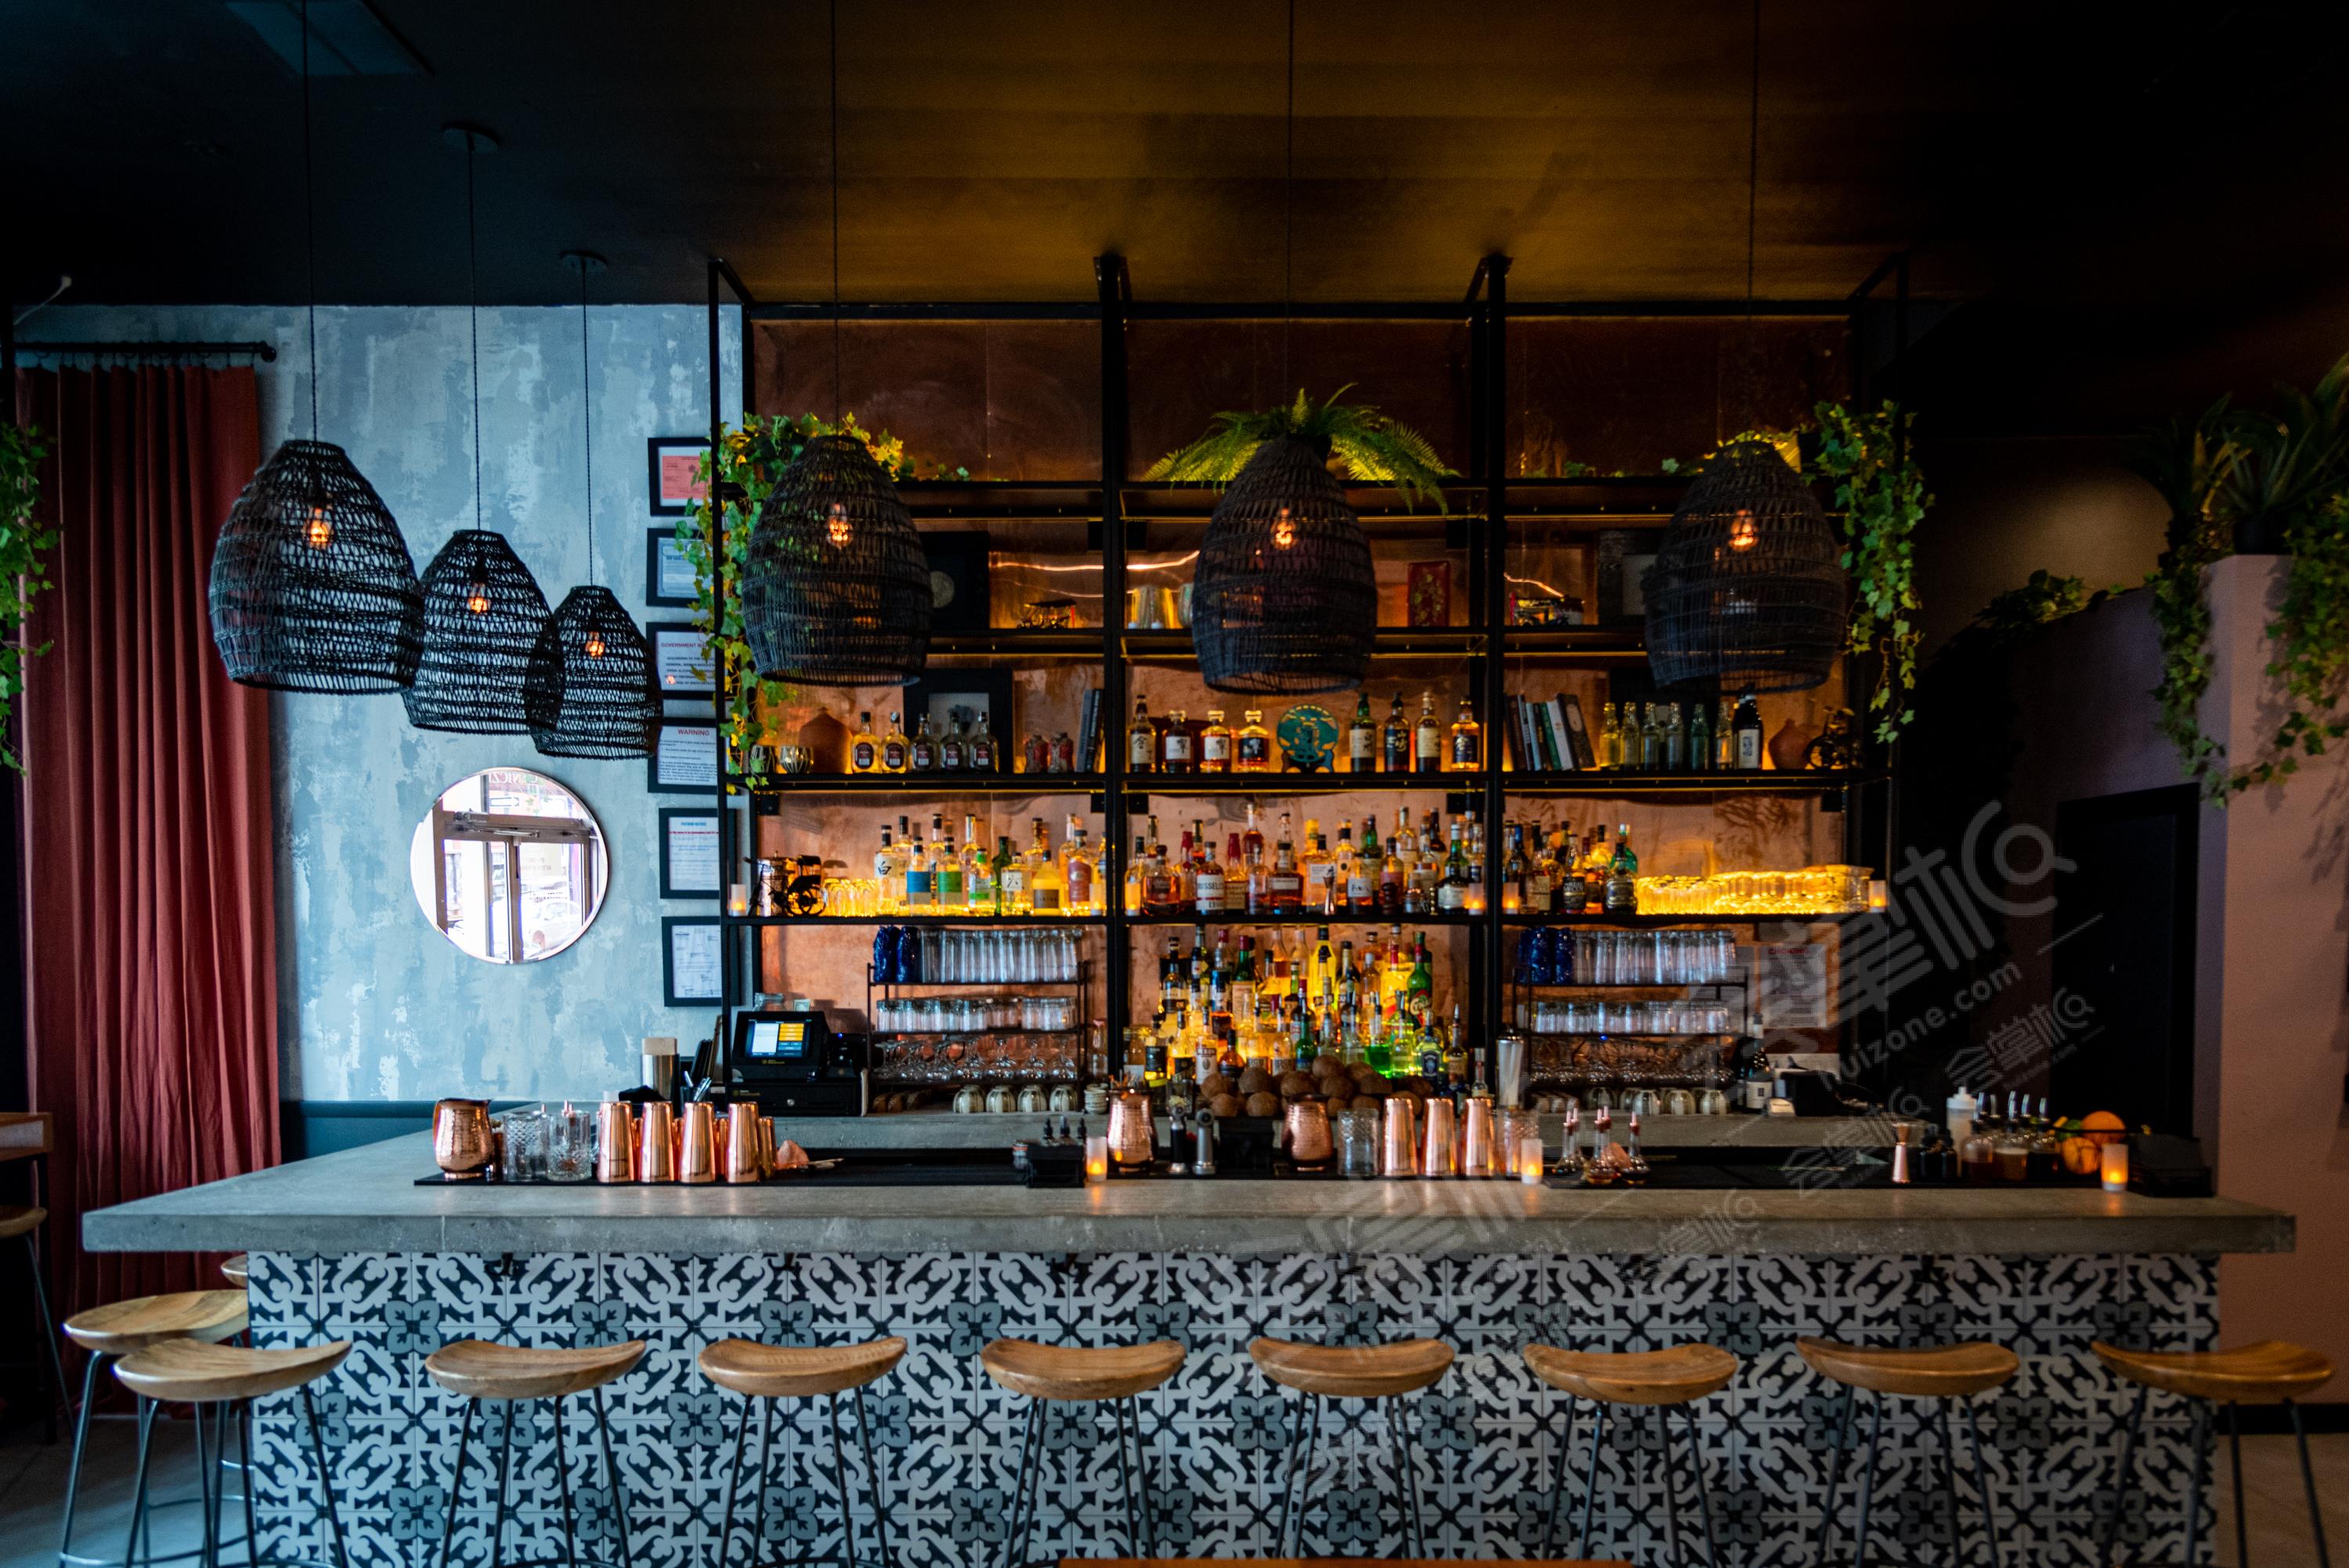 Intimate Pan Asian Cocktail Bar